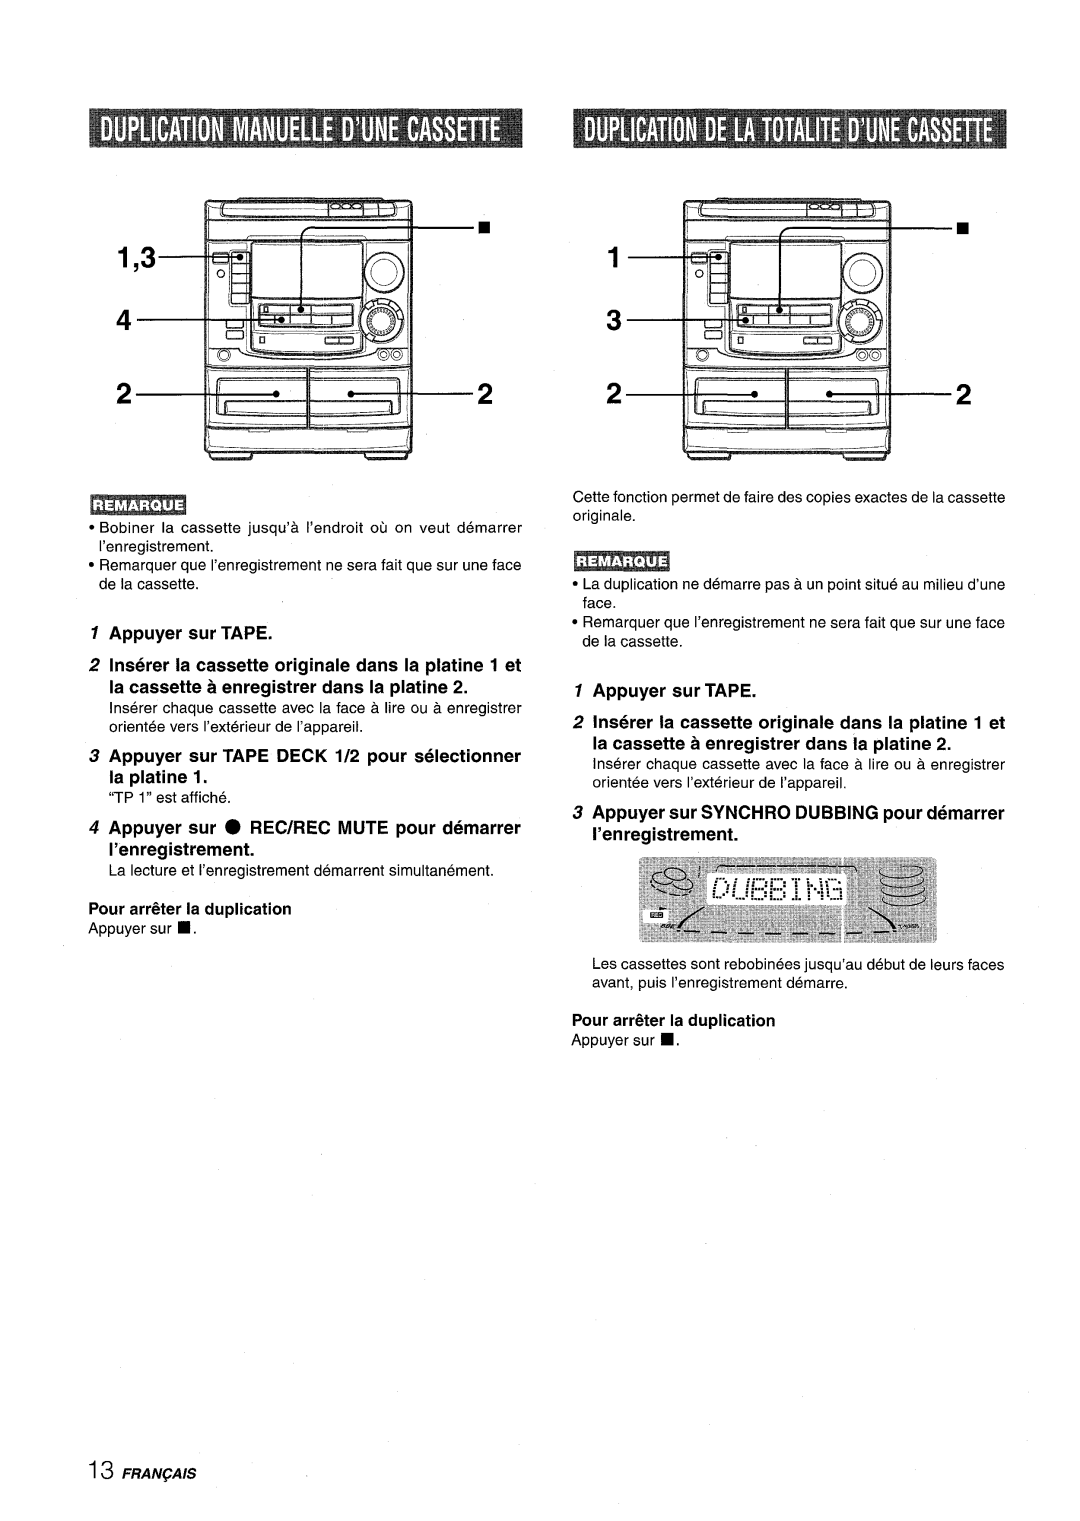 Aiwa NSX-A508 manual Appuyer sur TAPE DECK 1/2 pour selectionner la platine 